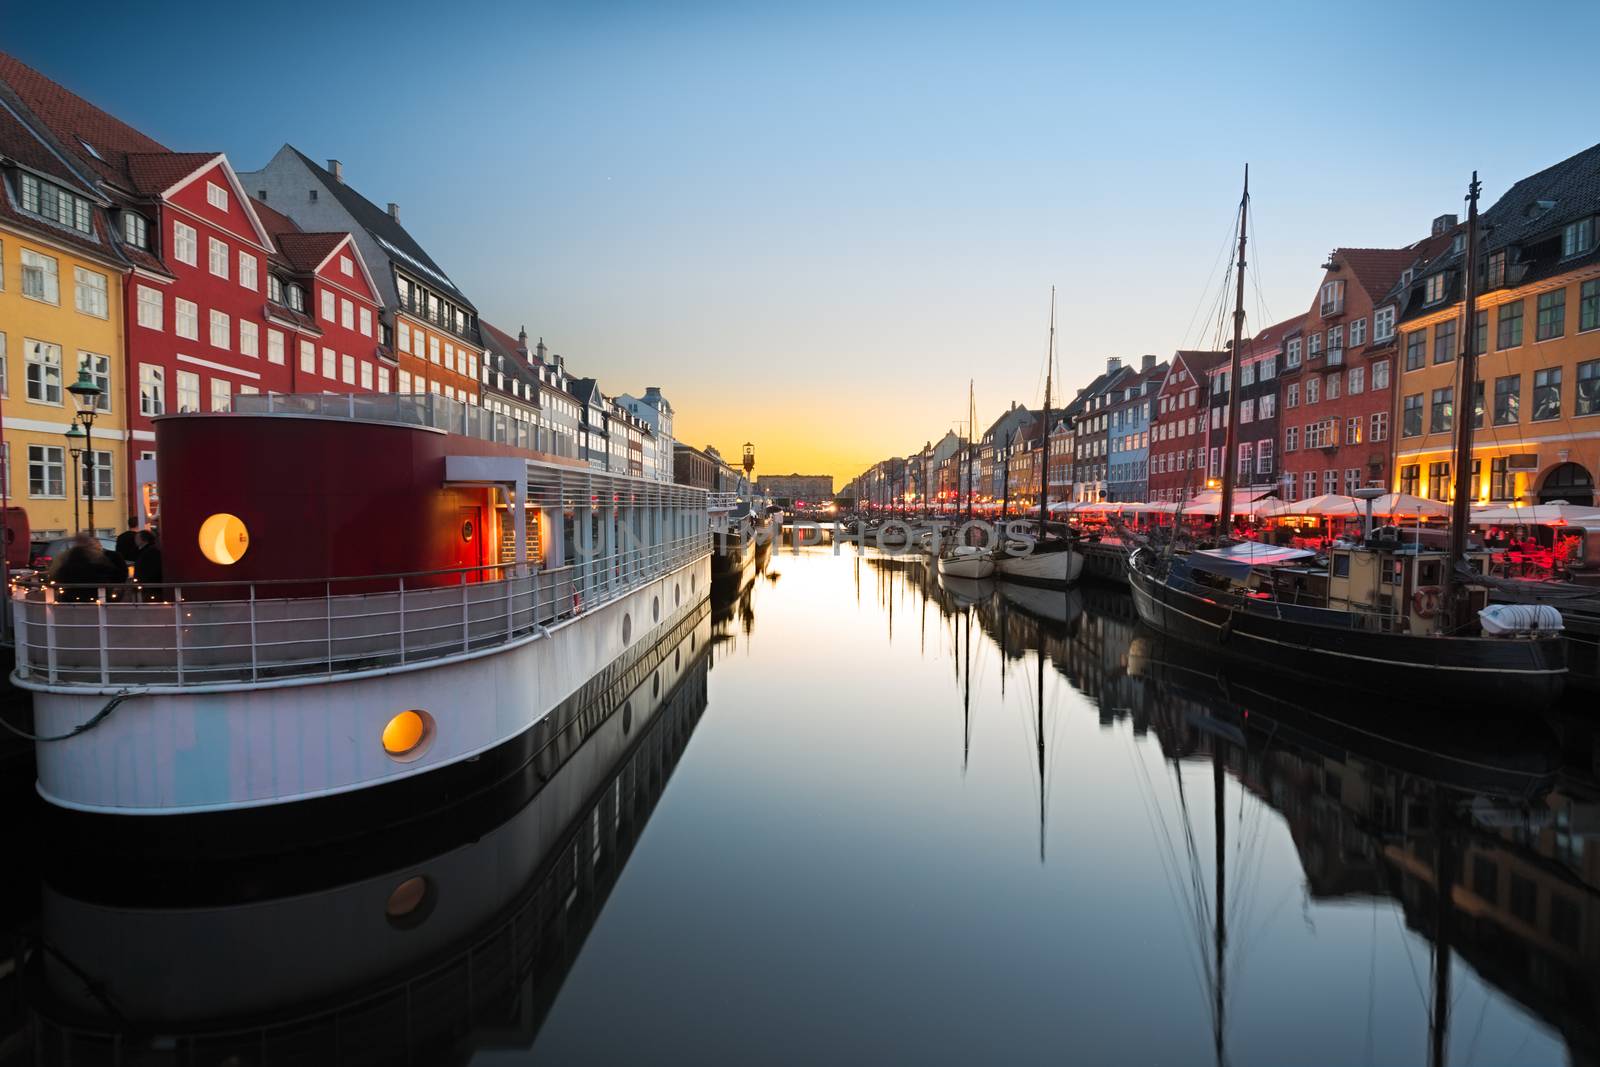 Ships in Nyhavn at sunset, Copenhagen, Denmark by fisfra